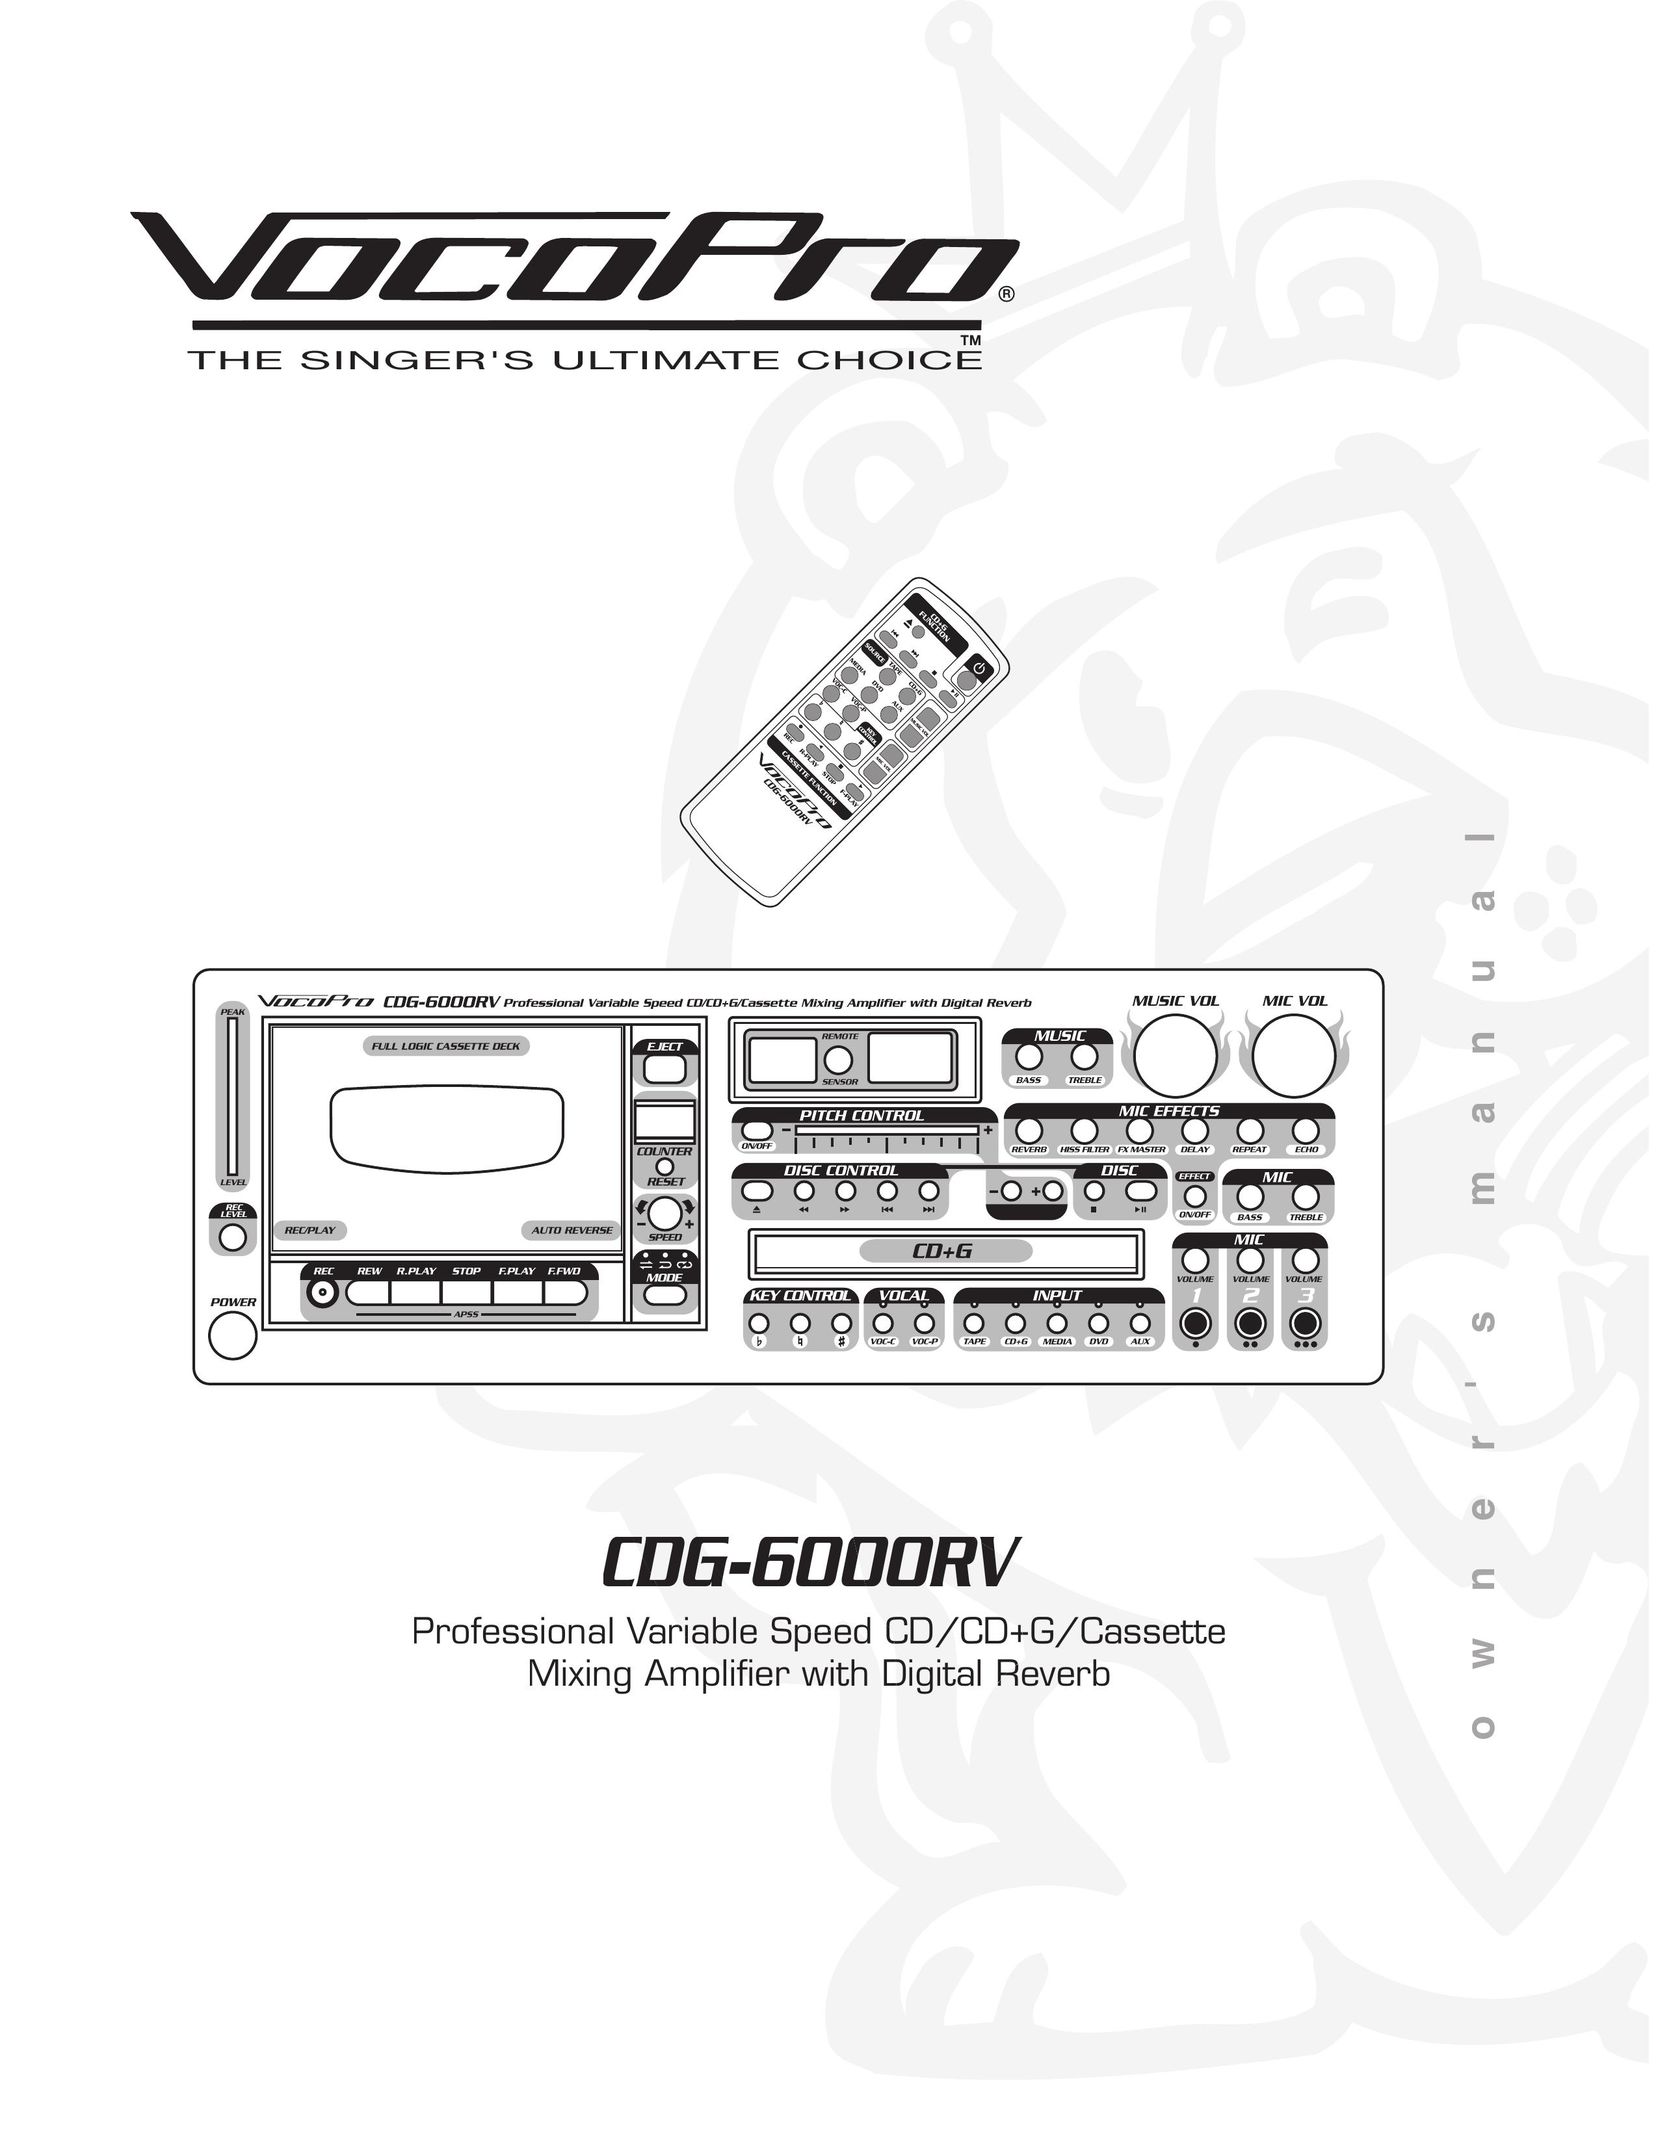 VocoPro CD-6000RV Car Stereo System User Manual